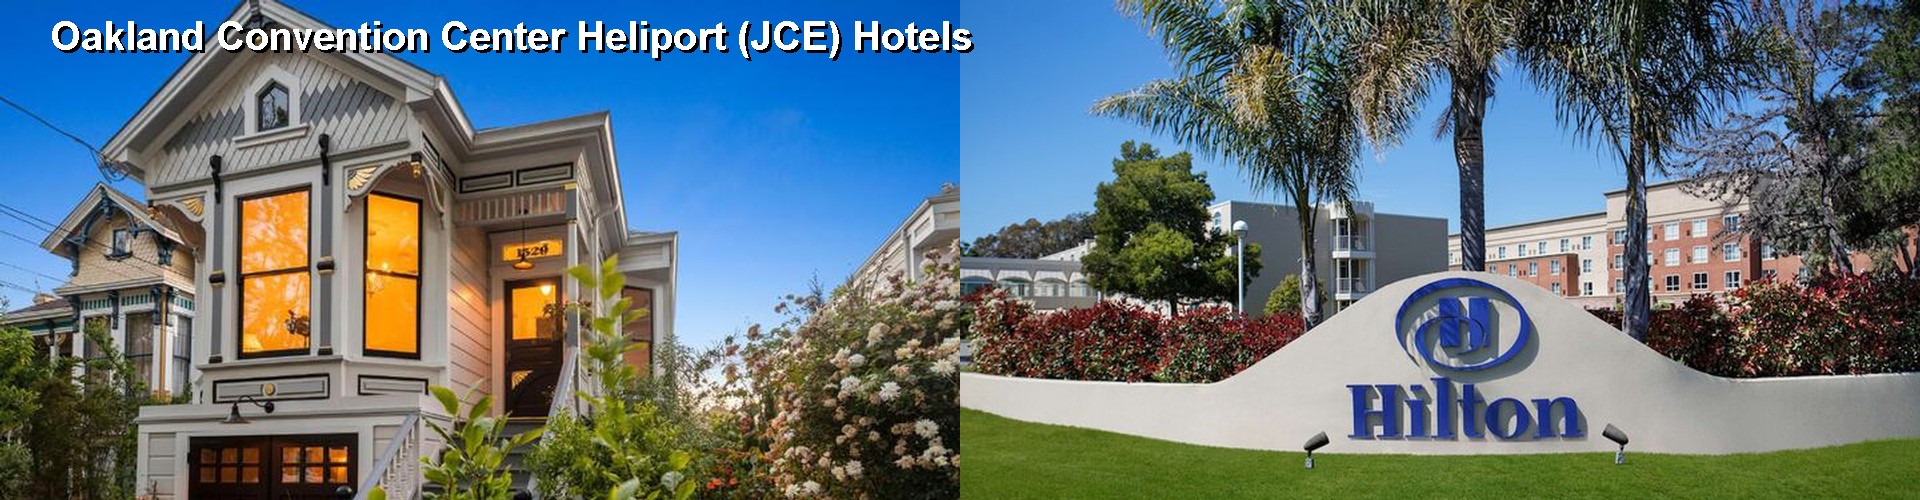 4 Best Hotels near Oakland Convention Center Heliport (JCE)